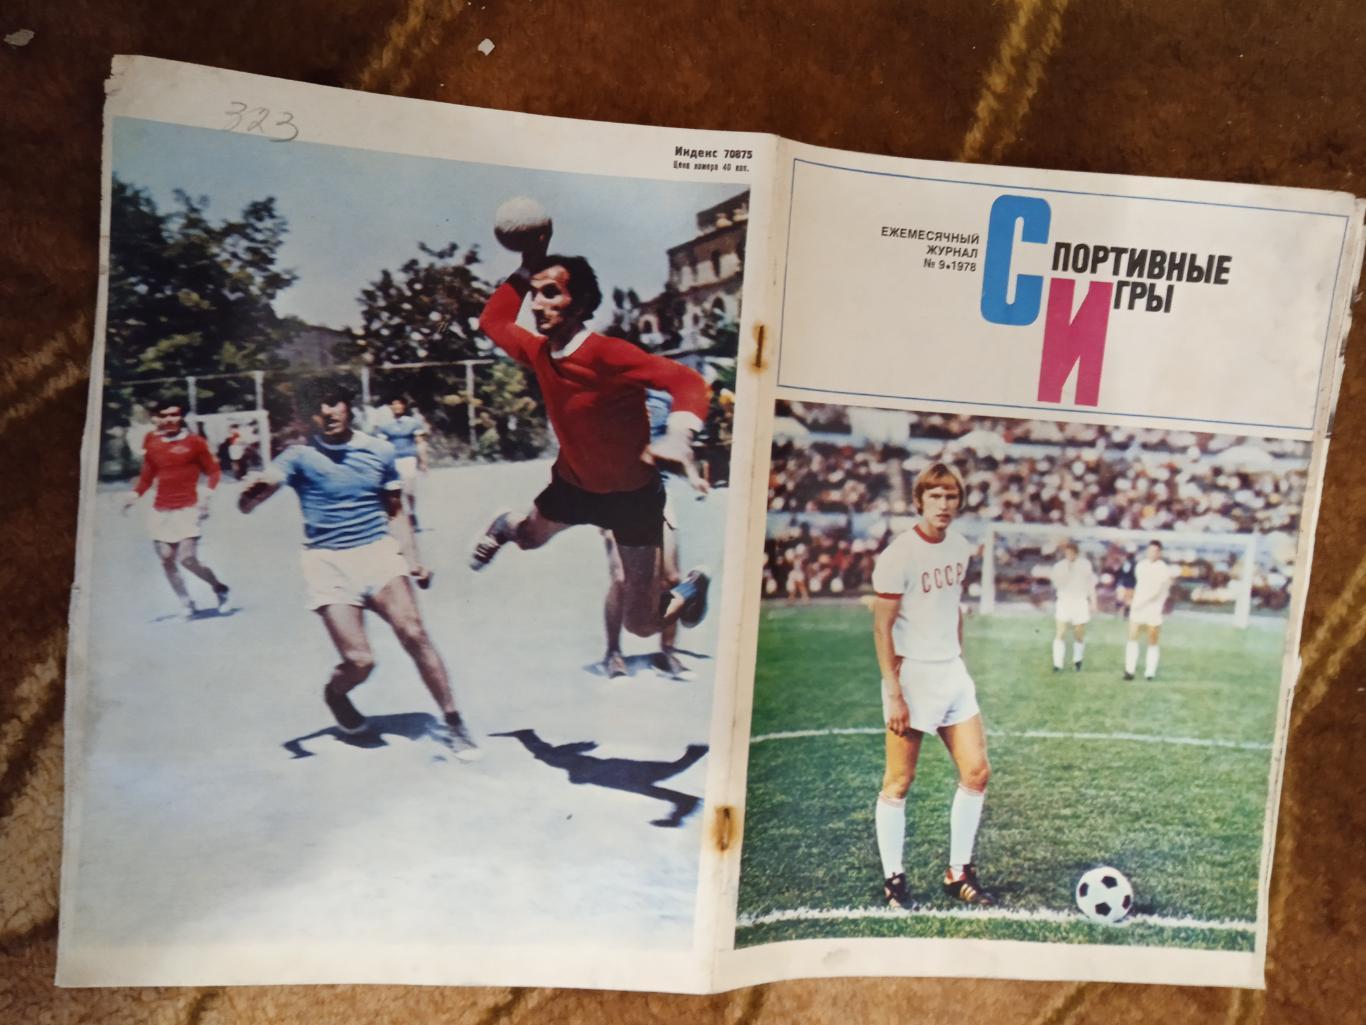 Журнал.Спортивные игры № 9 1978 г. Футбол,хоккей,волейбол.ЧМ 78.Аргентина.